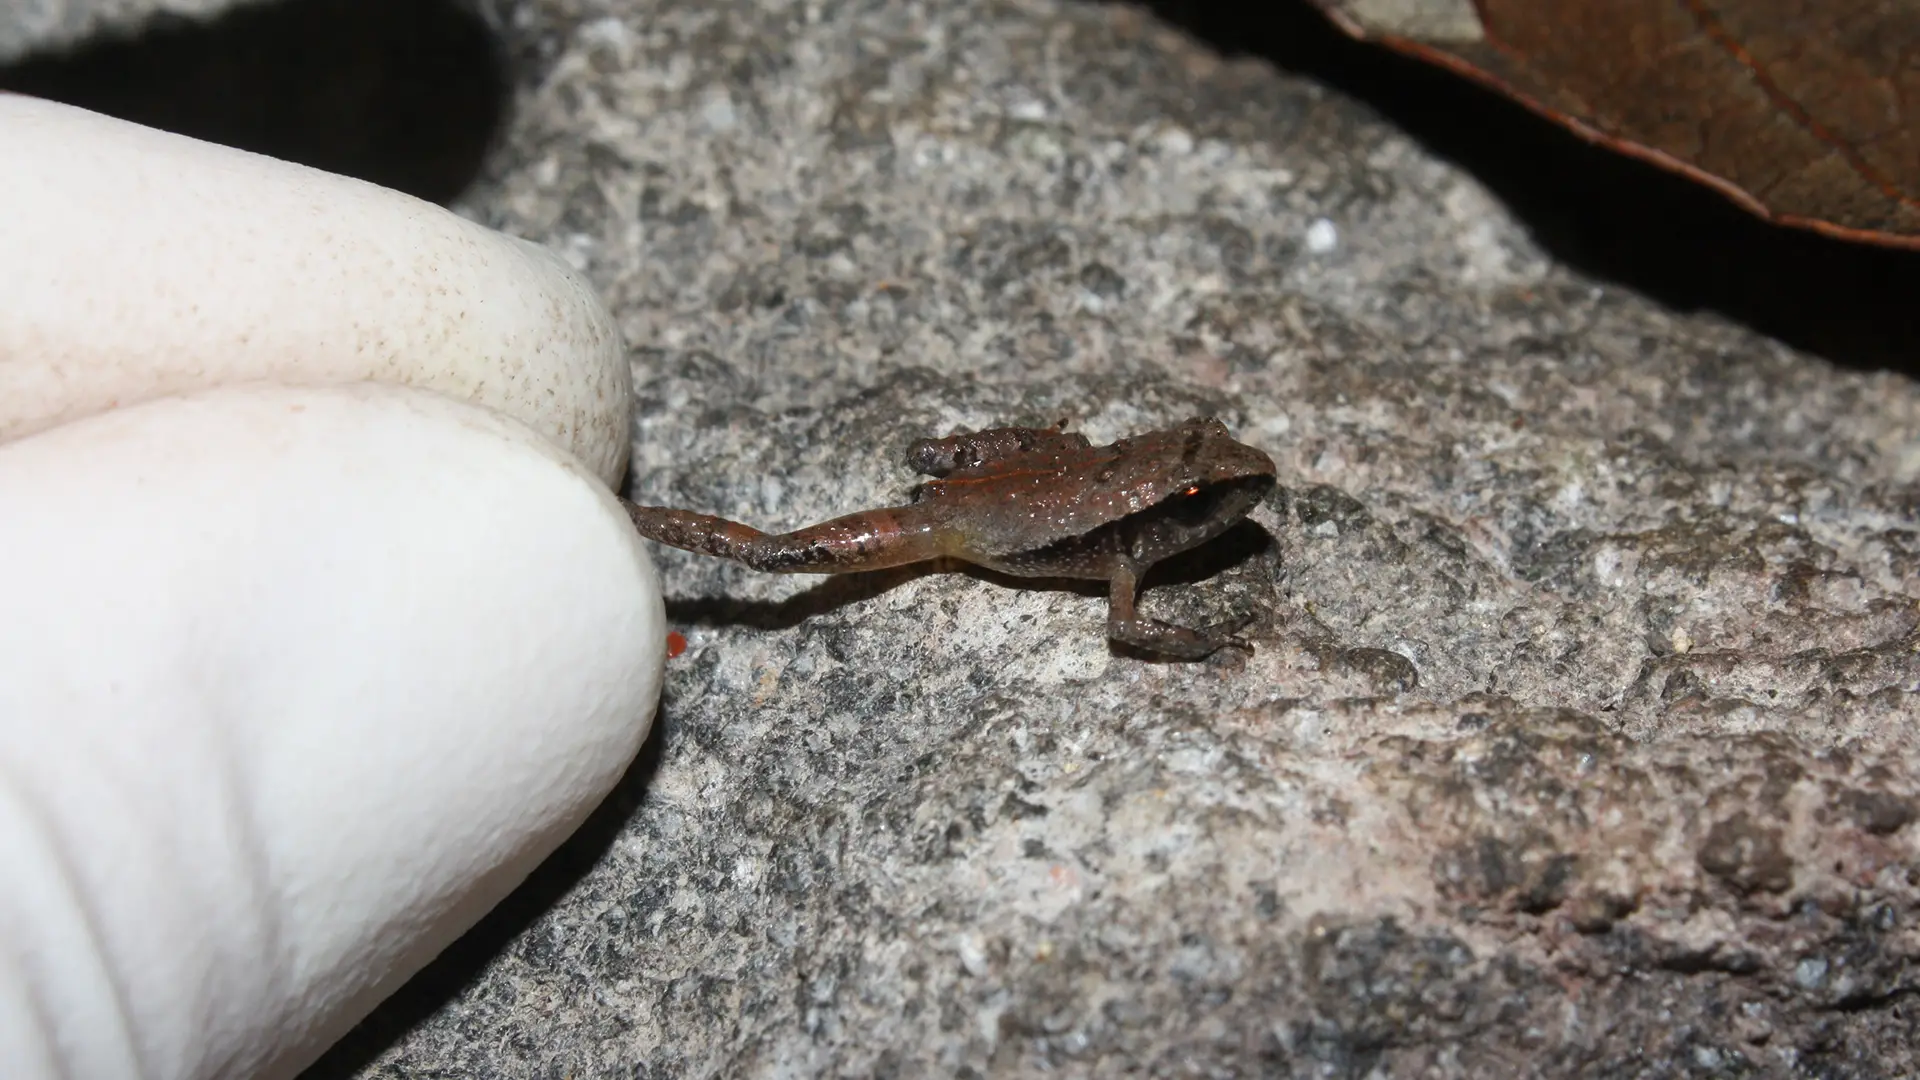 Craugastor rubinus, l'une des espèces nouvellement décrites, est éclipsée par le bout des doigts d'un chercheur.